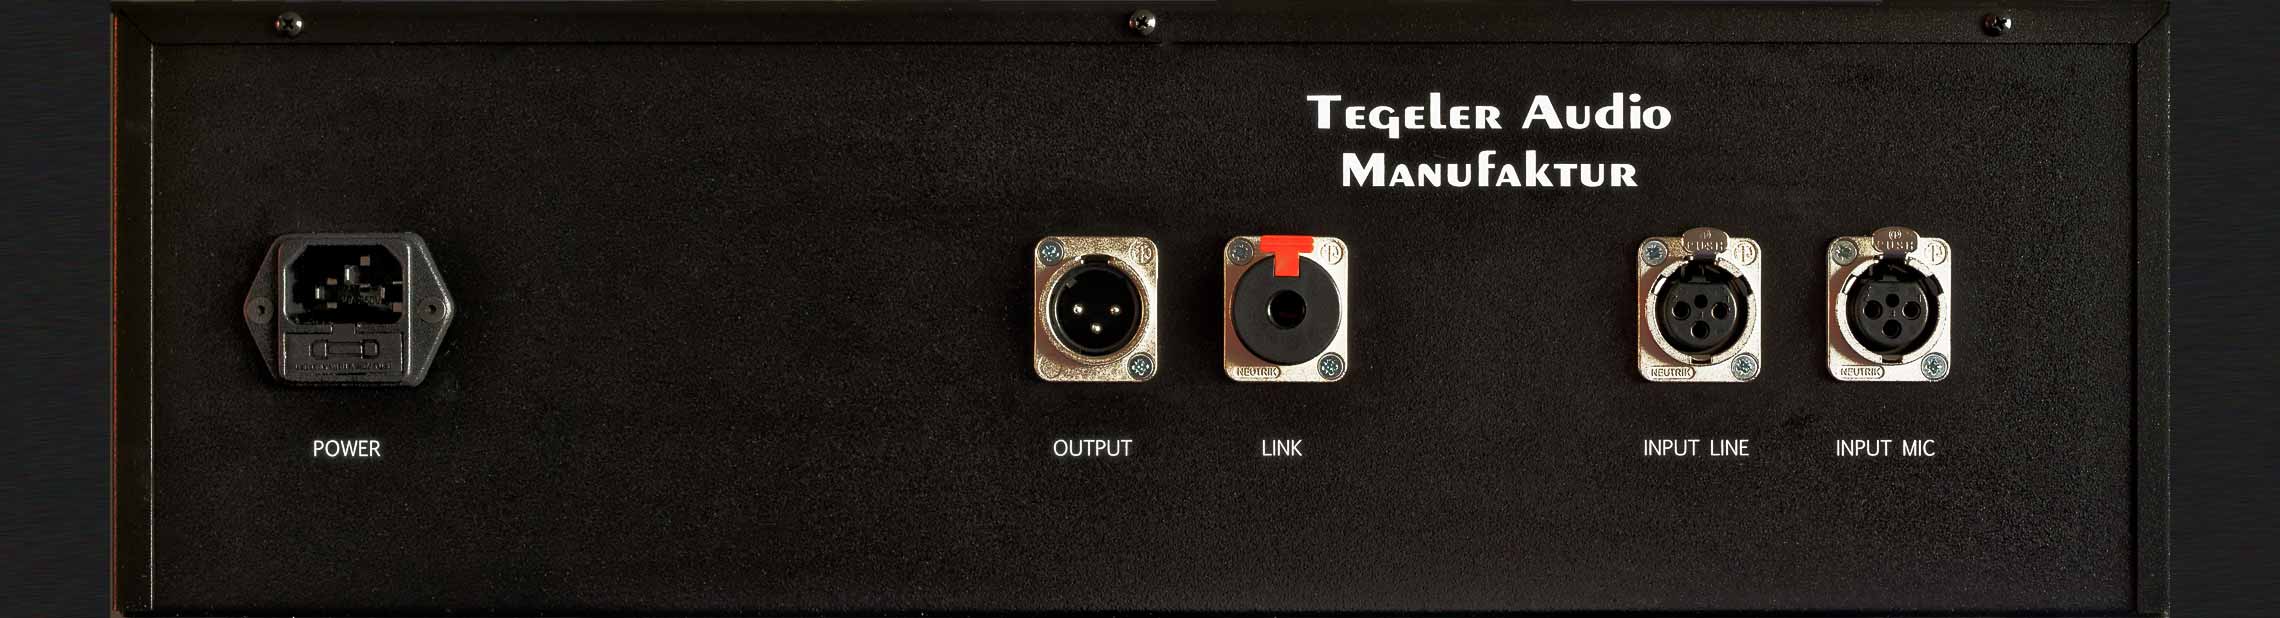 Tegeler Audio Manufaktur Vtrc Recording Channel - Preamp - Variation 2